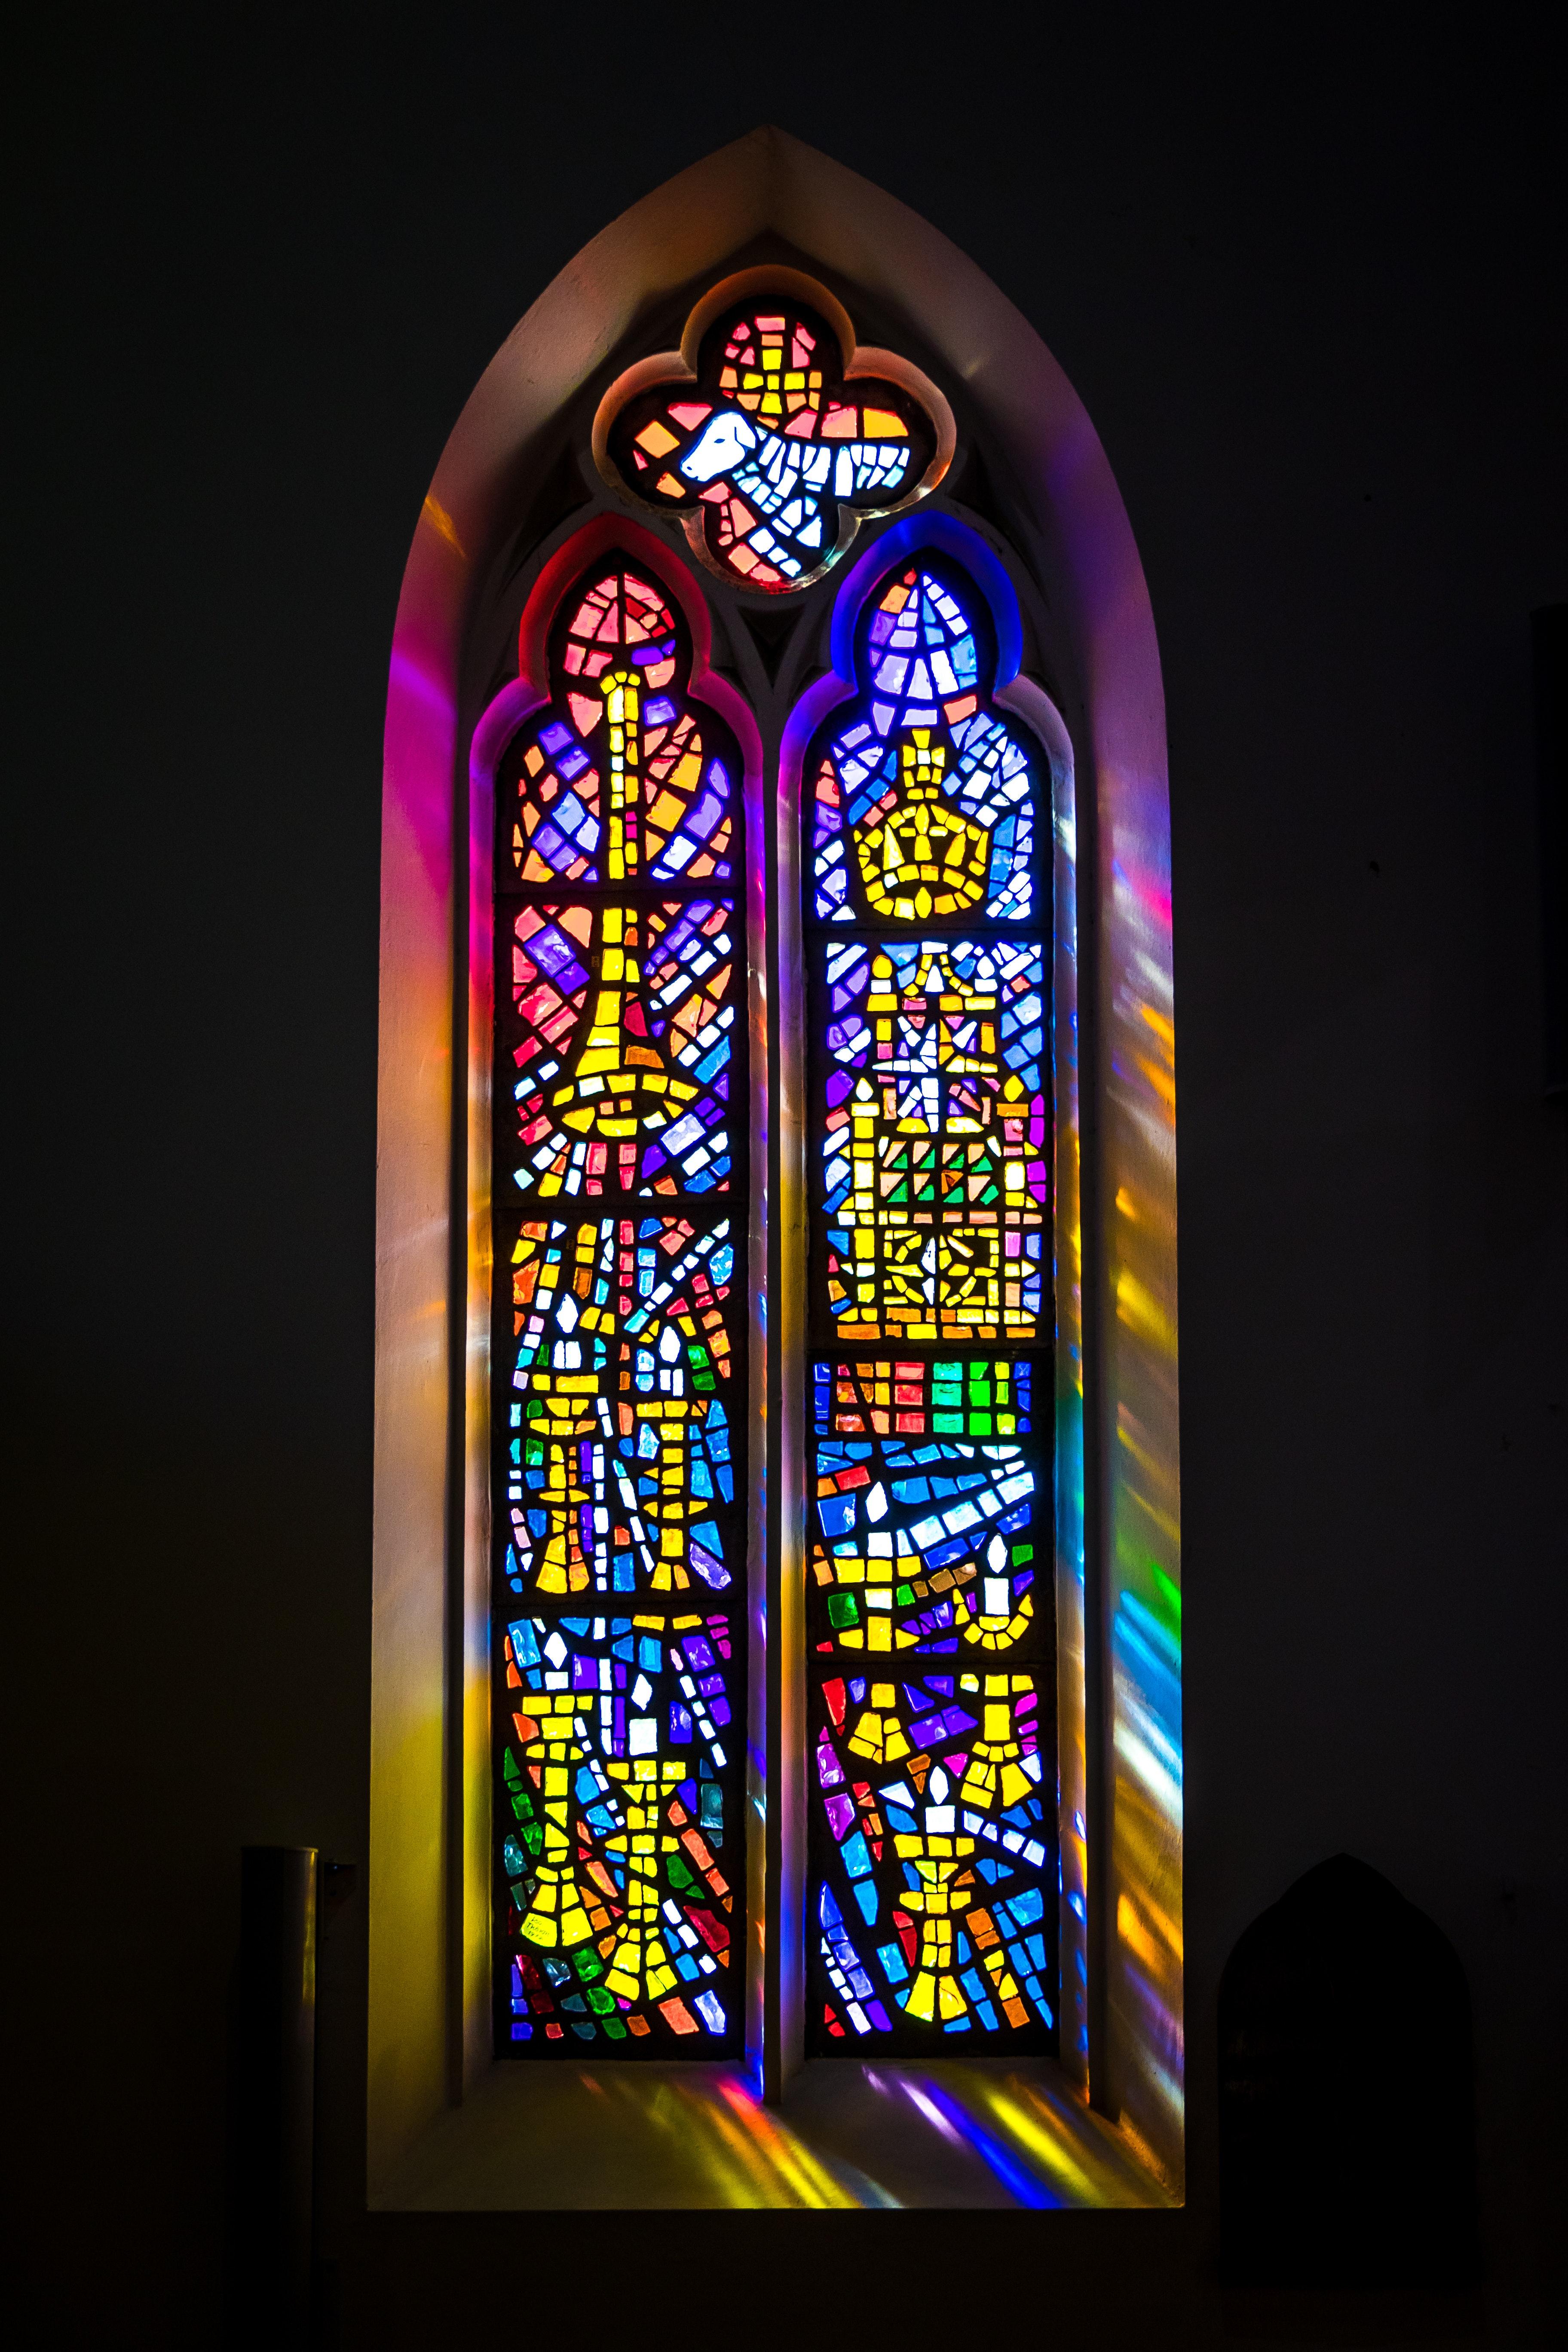 教堂玻璃马赛克的启发,因此花窗上的图案通常是由铅条与彩色玻璃拼接